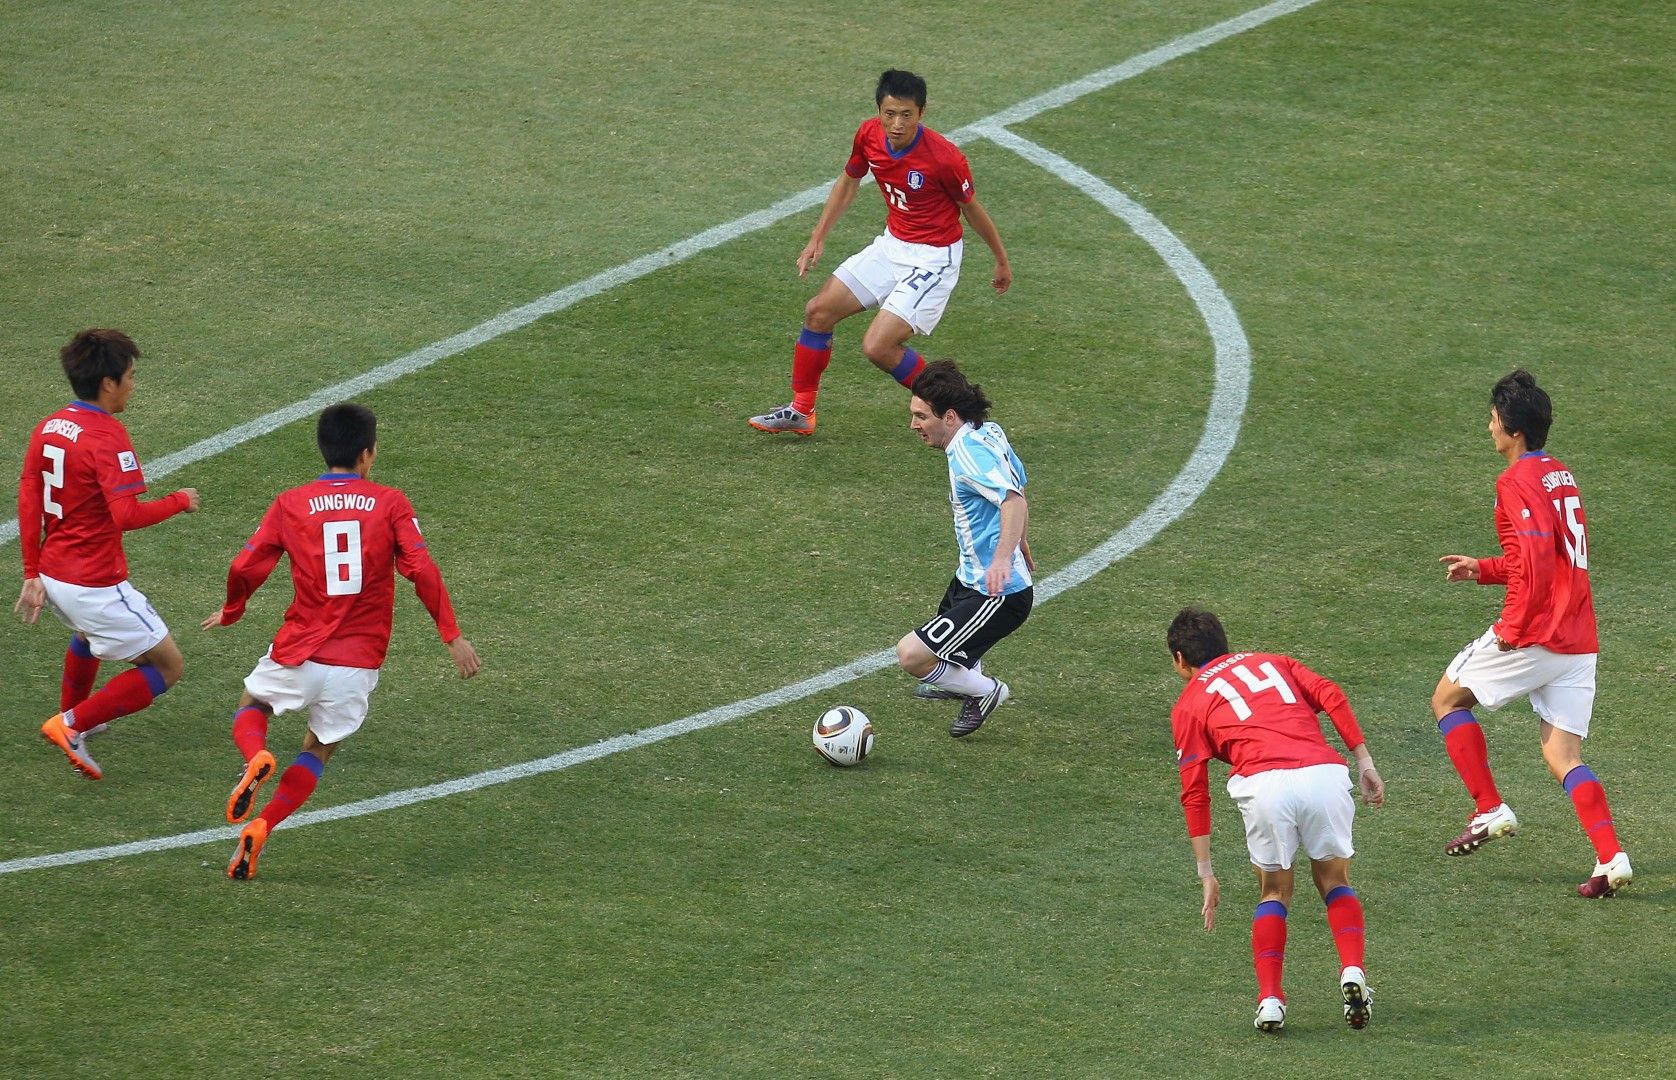 17 юни 2010 г. Гонсало Игуаин прави хеттрик, а Лео Меси изнася силен мач, но без гол - 4:1 срещу Южна Корея.